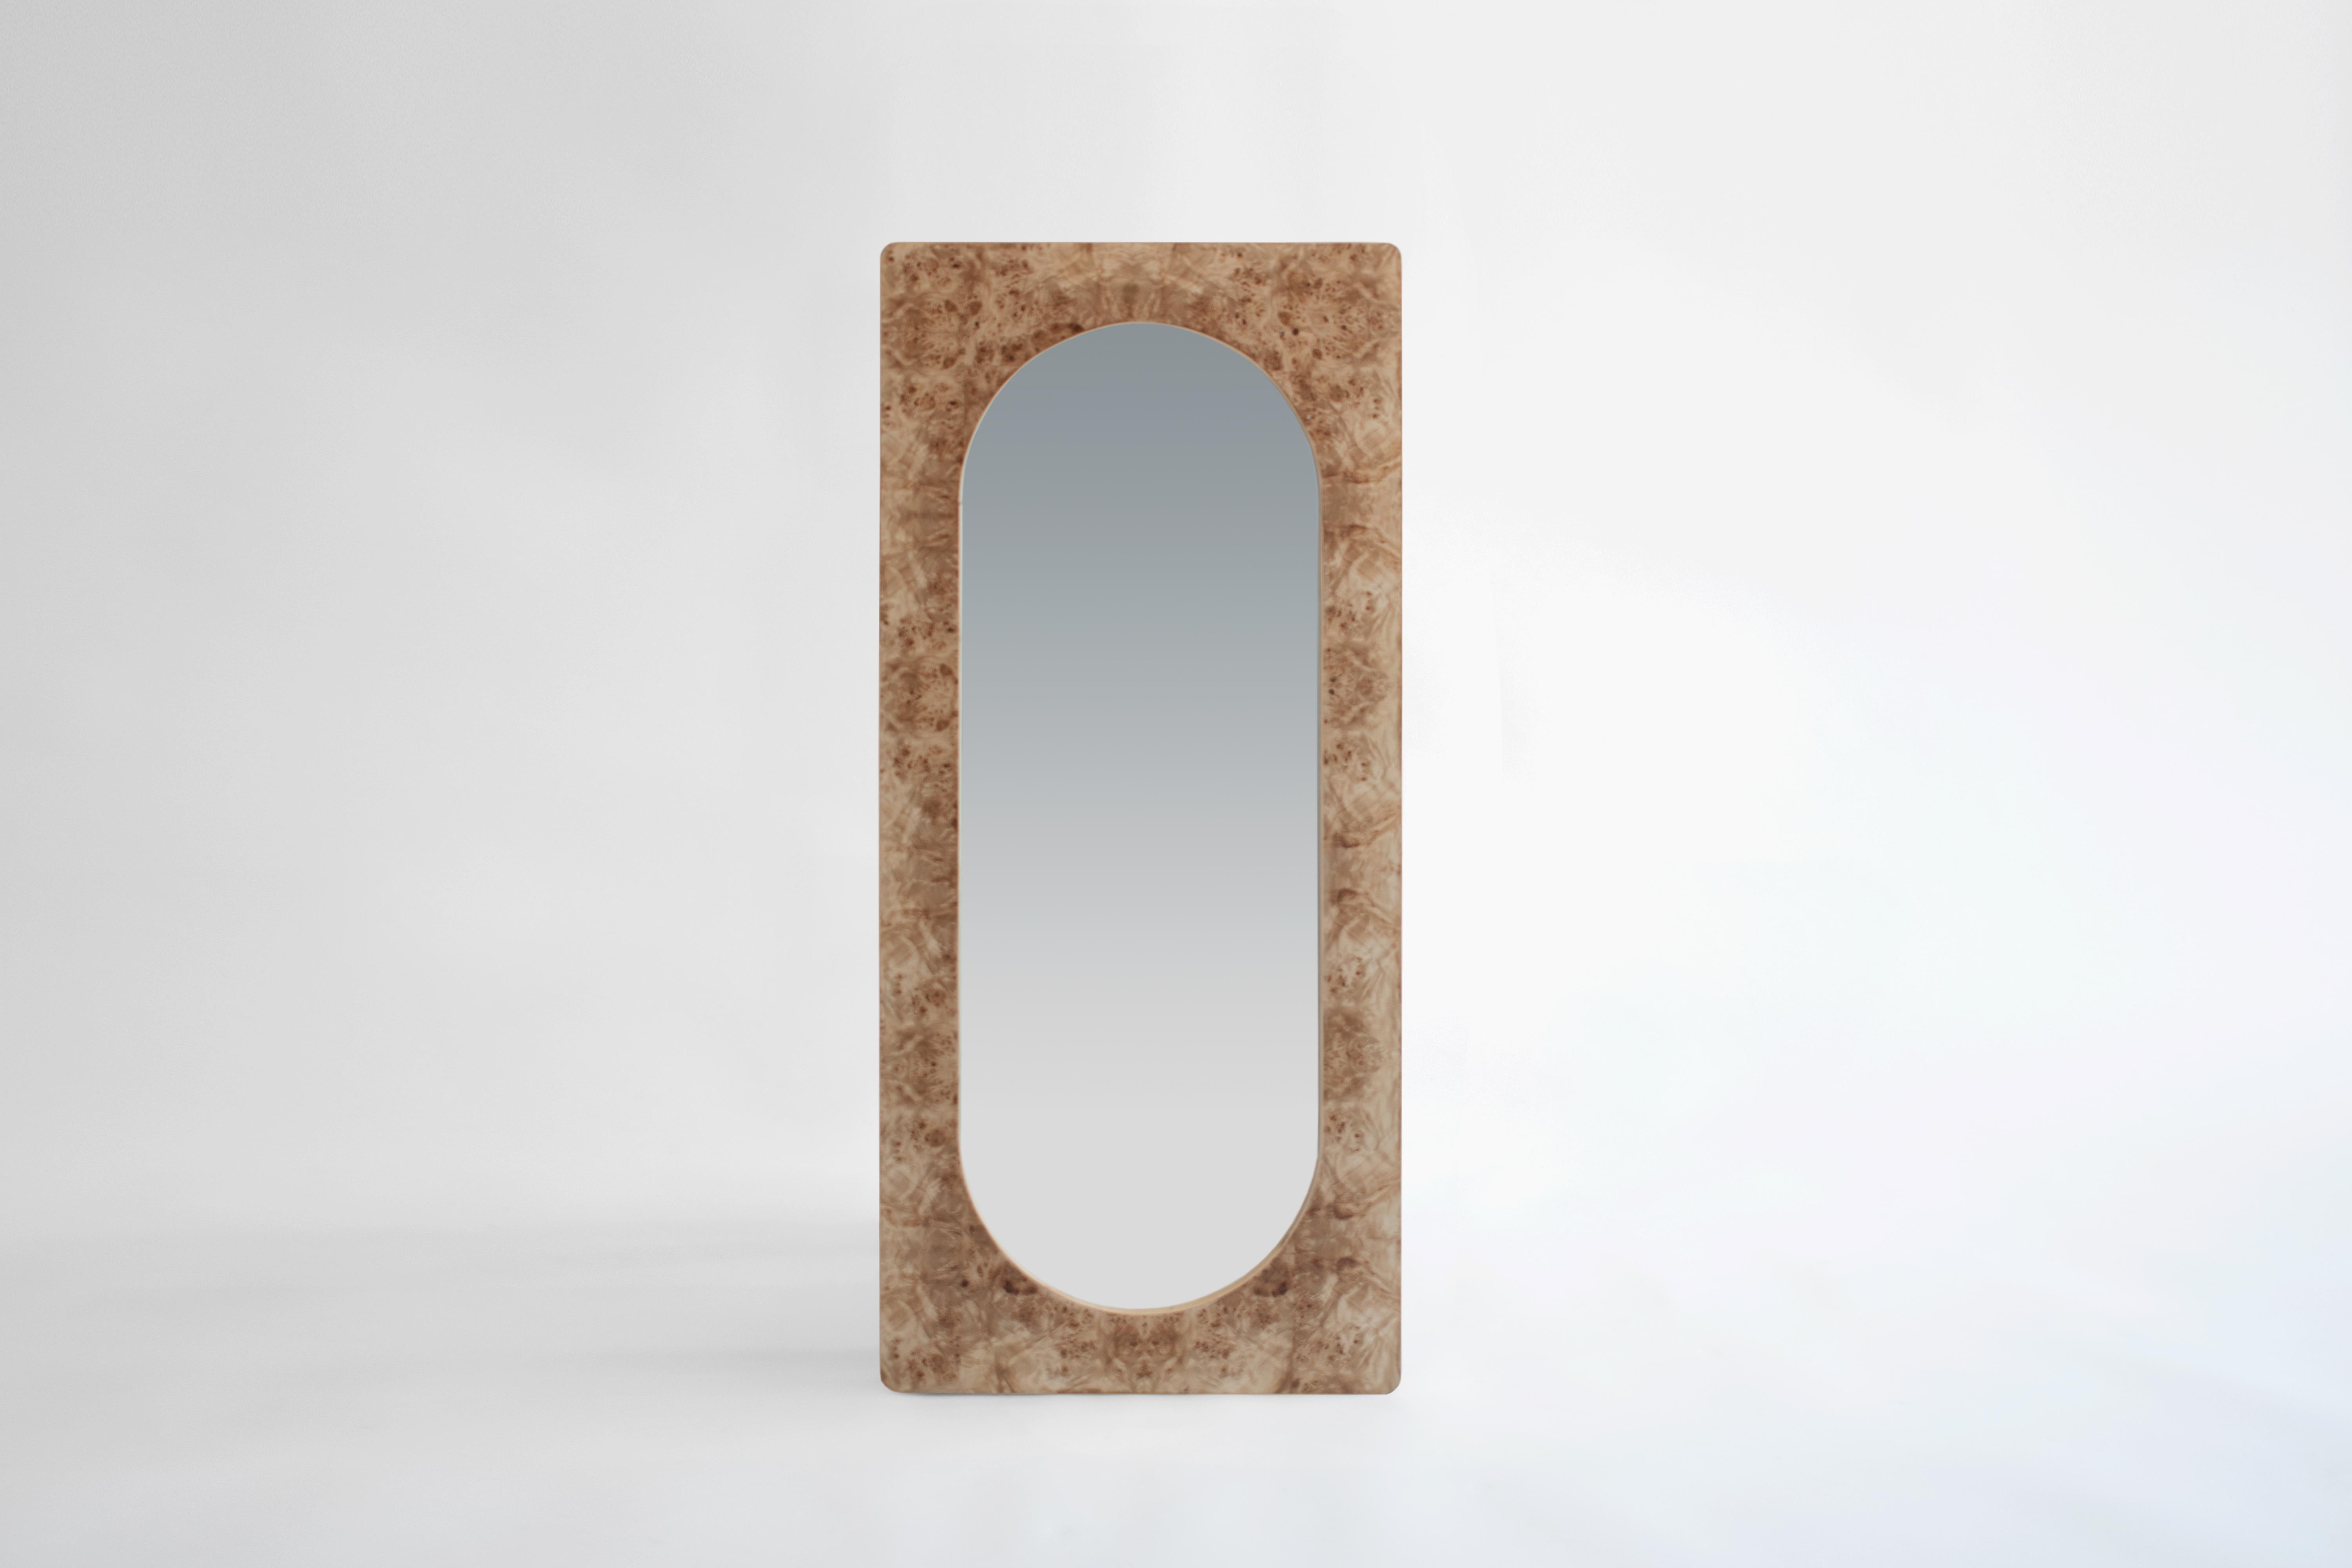 Wandspiegel (zum Anlehnen oder Aufhängen) aus Holz und Mappa-Maser-Furnier.

Dieser Spiegel ist inspiriert von seinen Zwillingsspiegeln aus der Collection'S. Von ihrem Sockel befreit, kann diese Anlehnversion sowohl vertikal als auch horizontal an